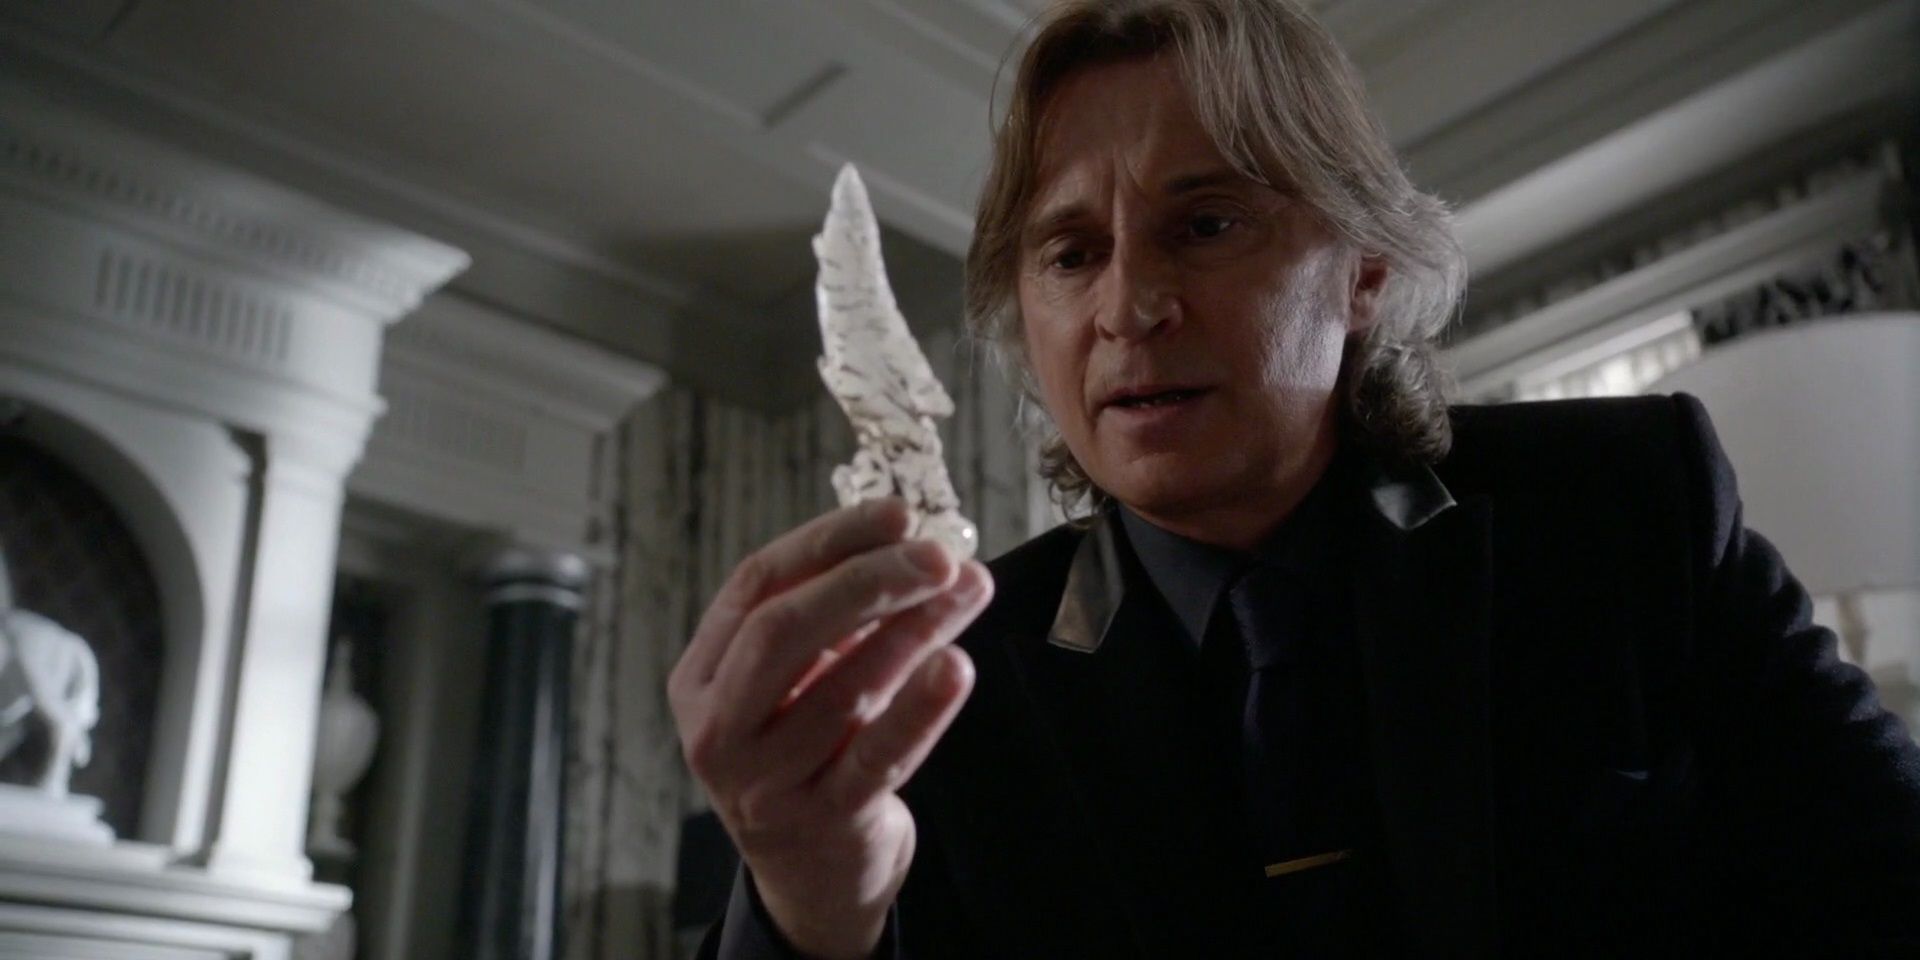 Mr. Gold, Rumpelstiltskin, holding a knife in Once Upon A Time